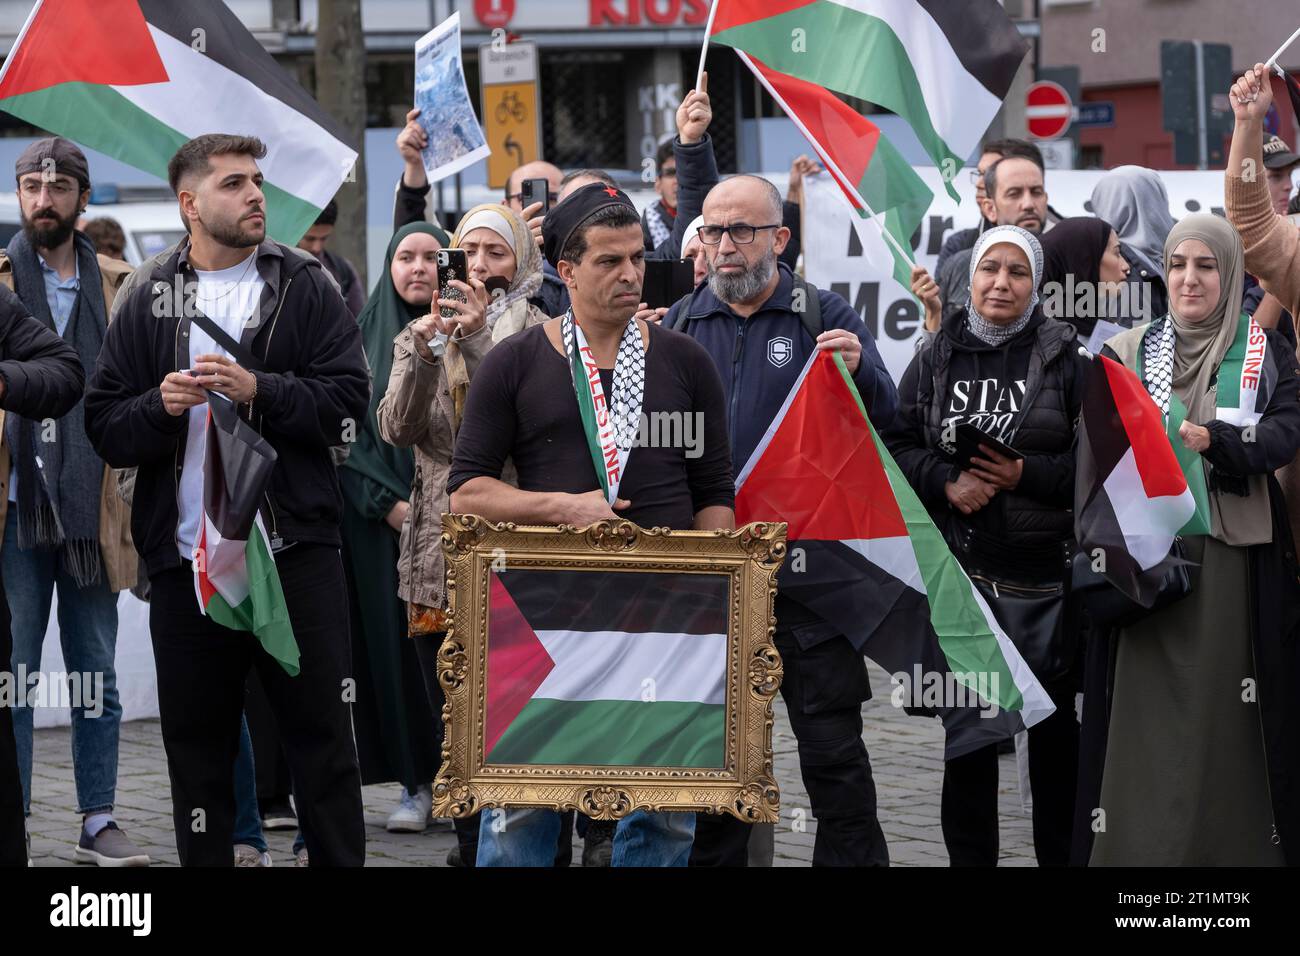 Una manifestazione di solidarietà per Israele e una seconda manifestazione dei palestinesi contro i bombardamenti di Gaza si sono svolti sull'Heumarkt di Colonia Foto Stock